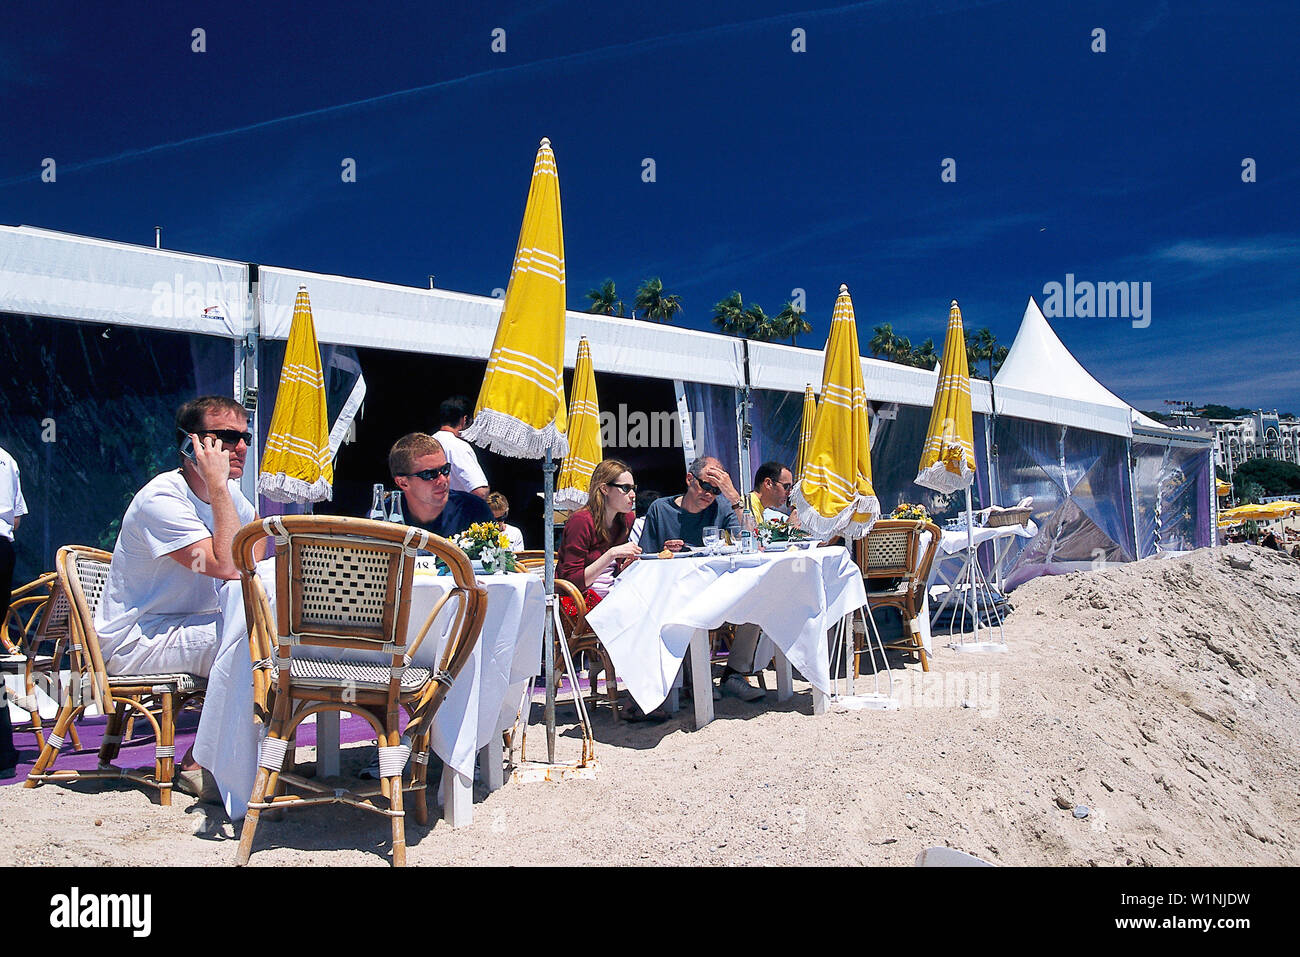 Festival de Cannes, Boulevard de la Croisette, Cannes Cote d'Azur, France Stock Photo